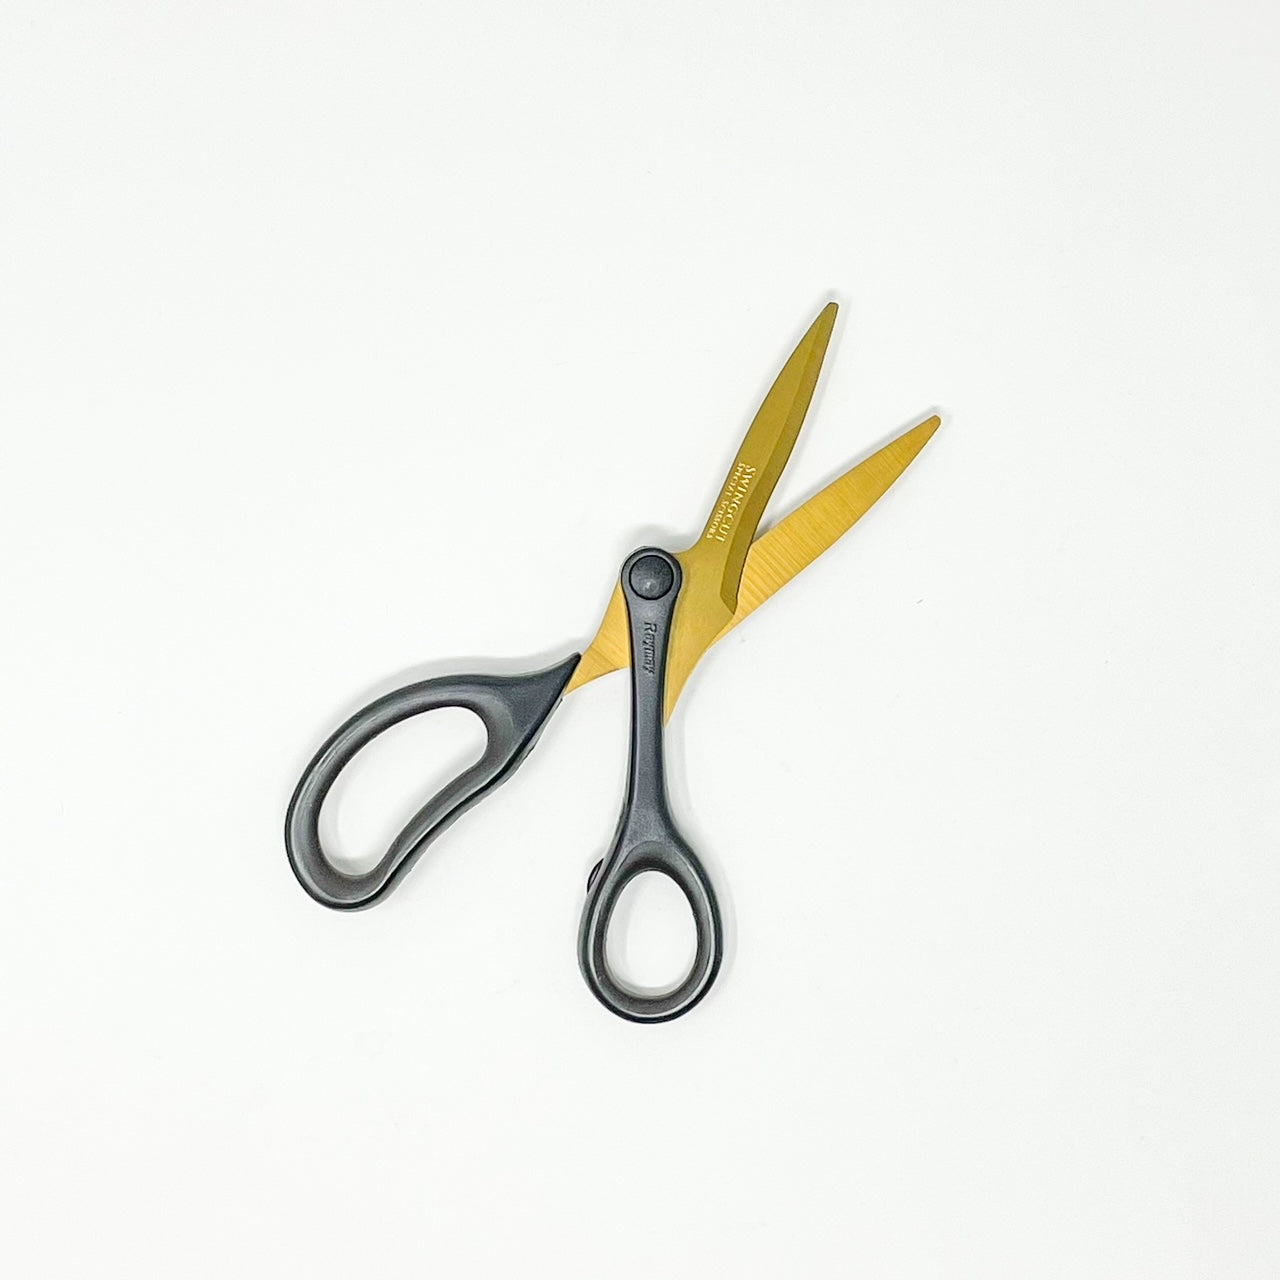 Reimei Scissors Swing Cut Fluorine Coat SH900